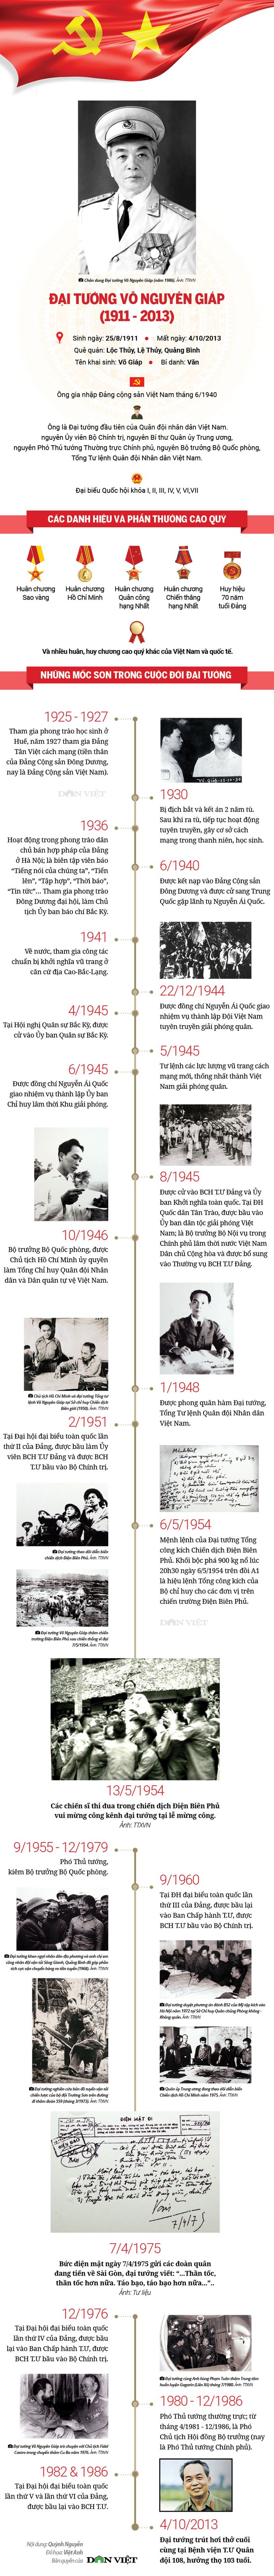 Infographic cuộc đời và sự nghiệp Đại tướng Võ Nguyên Giáp - Ảnh 1.